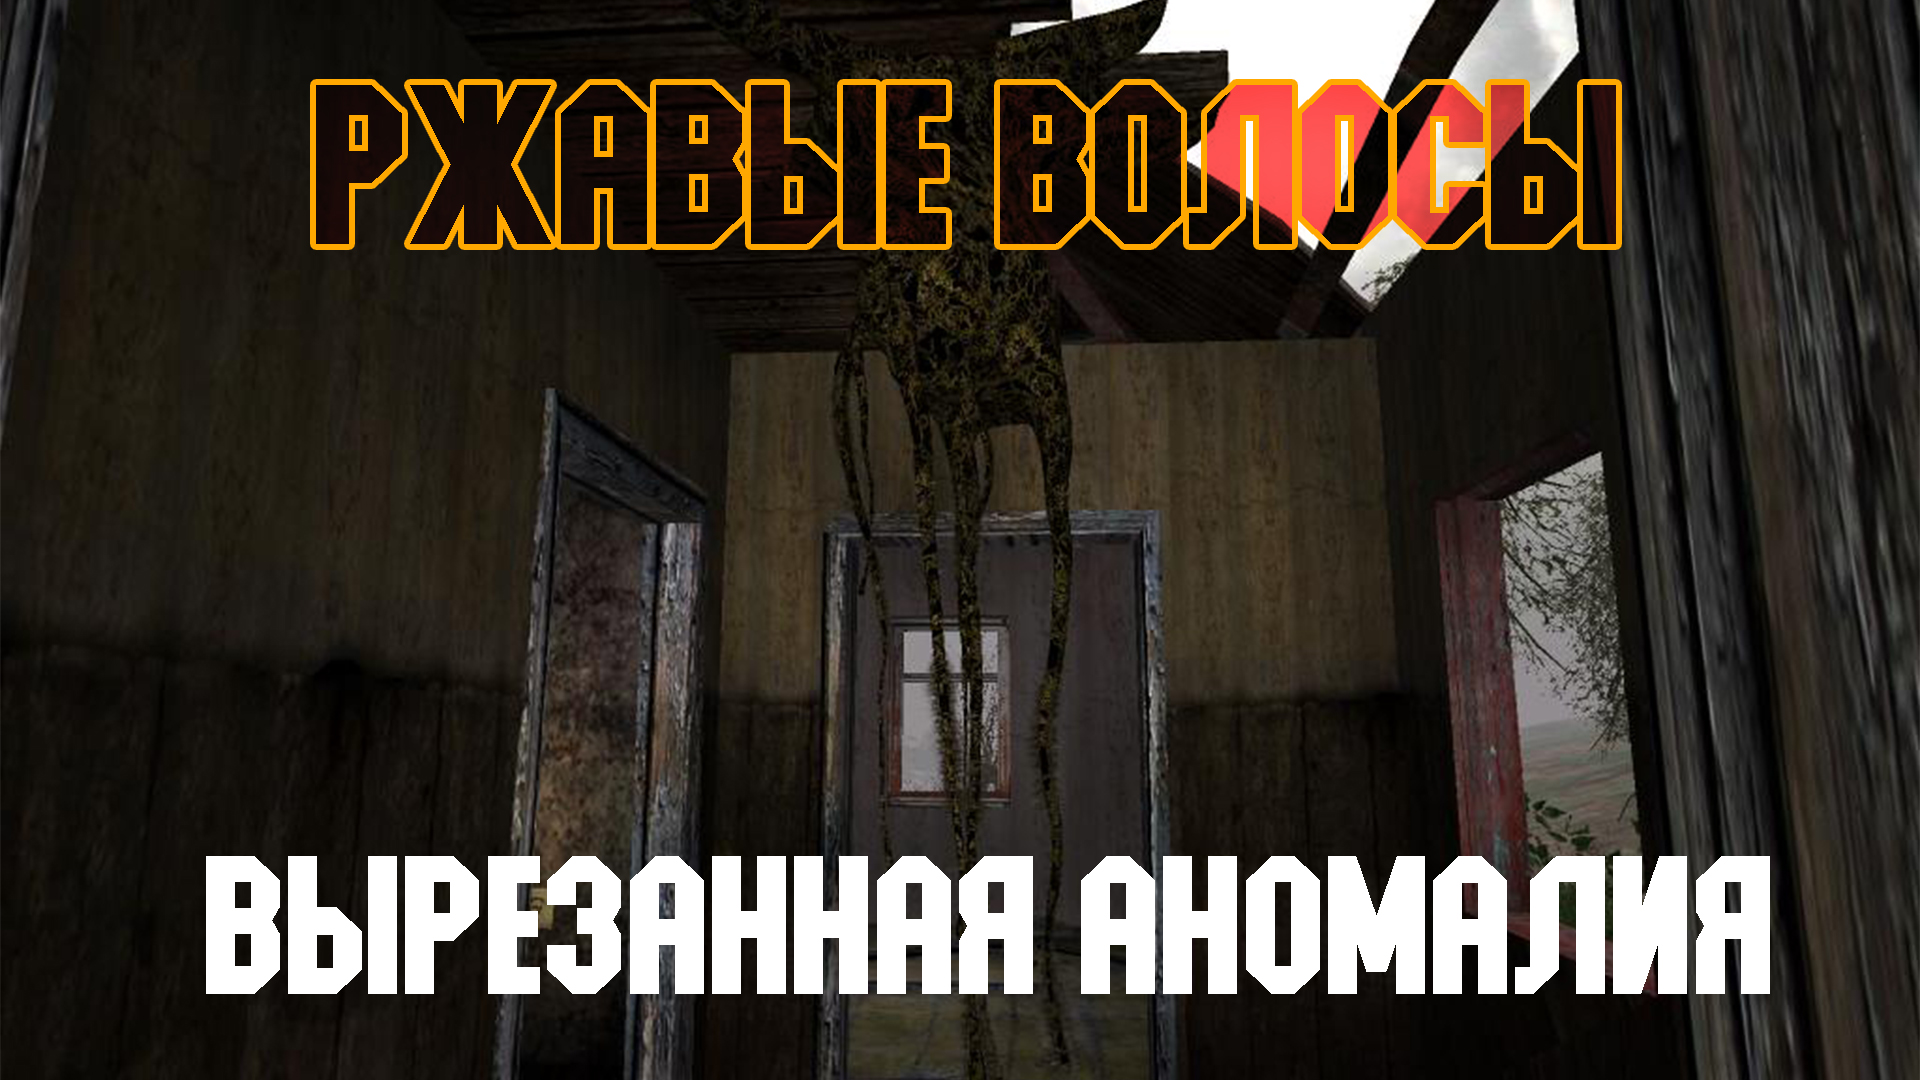 STALKER Тень Чернобыля. Смотр вырезанной аномалии "Ржавые волосы"